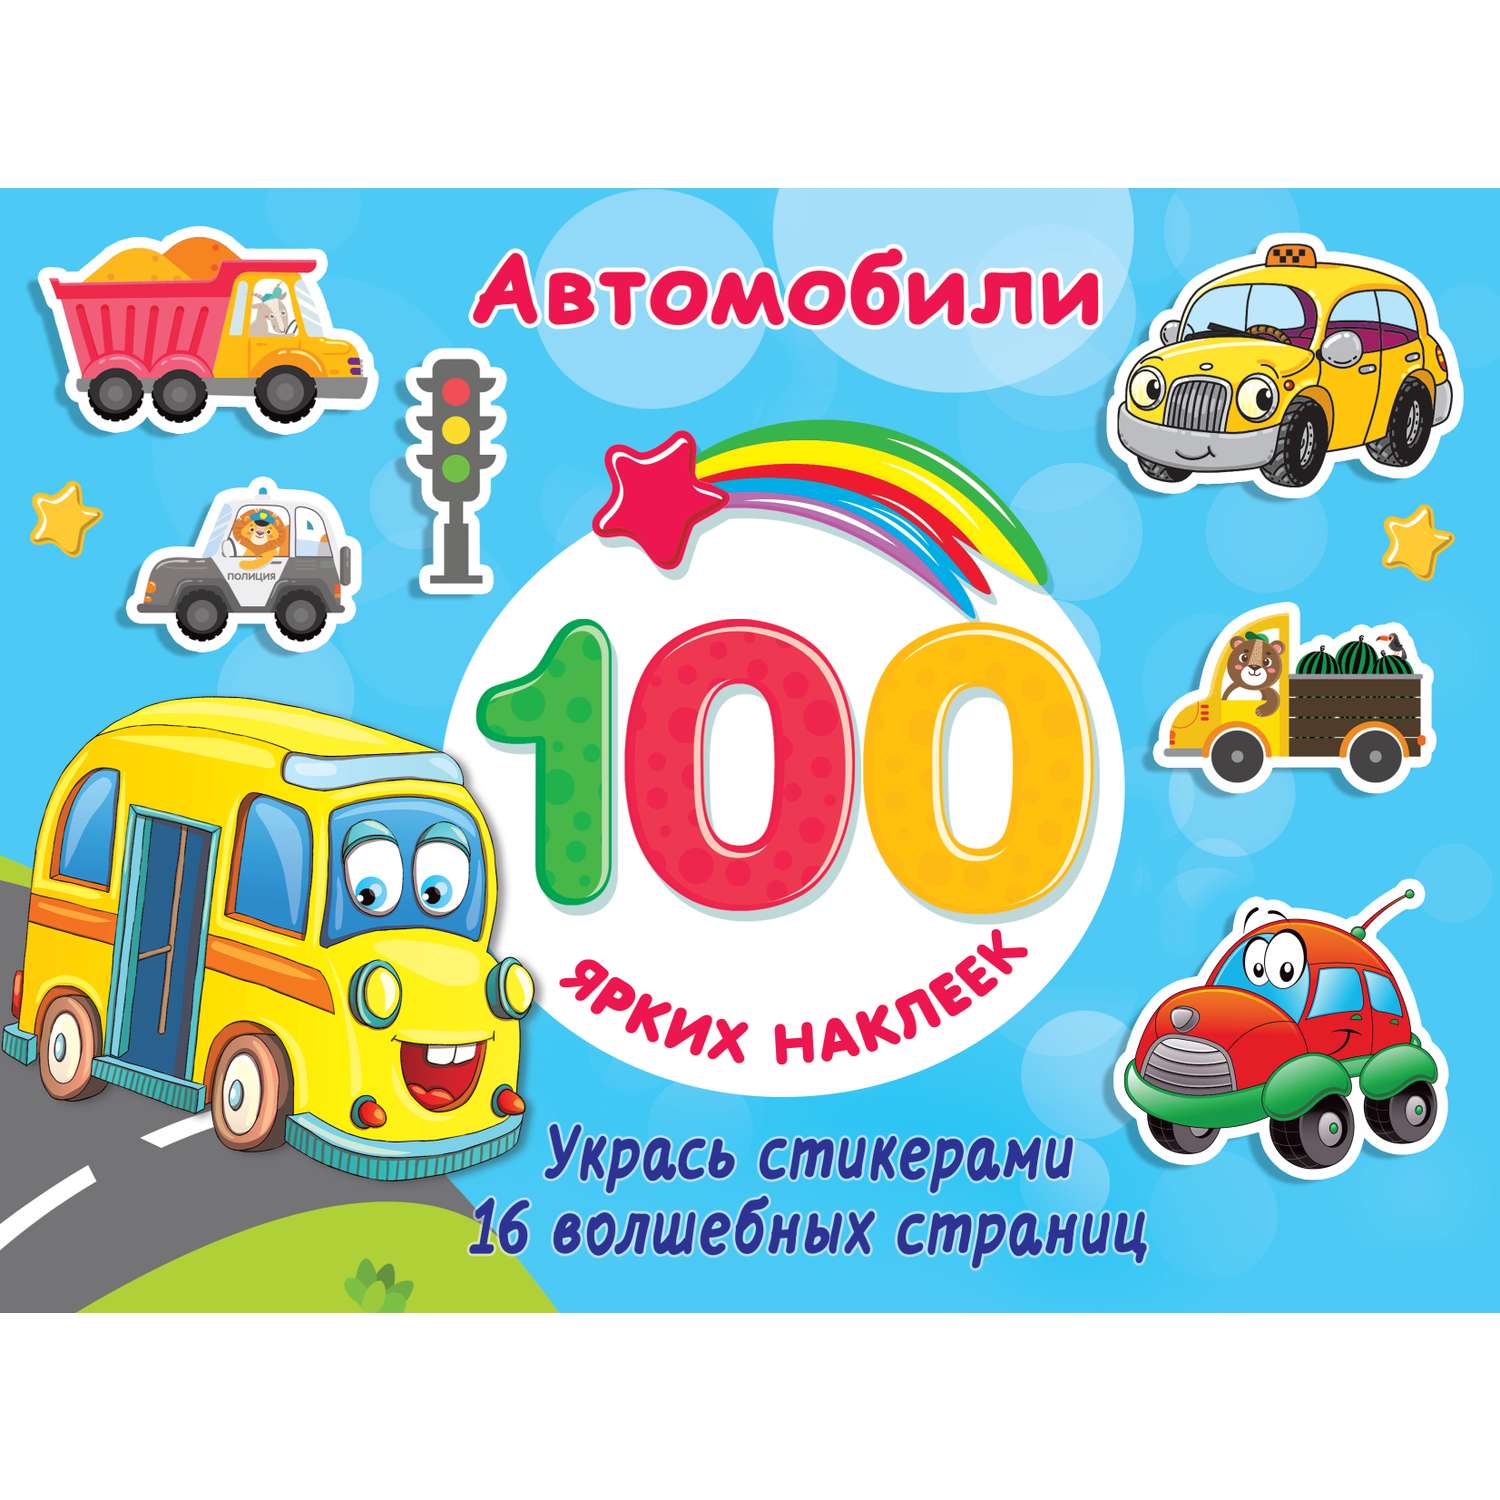 Книга АСТ 100 ярких наклеек Автомобили - фото 1